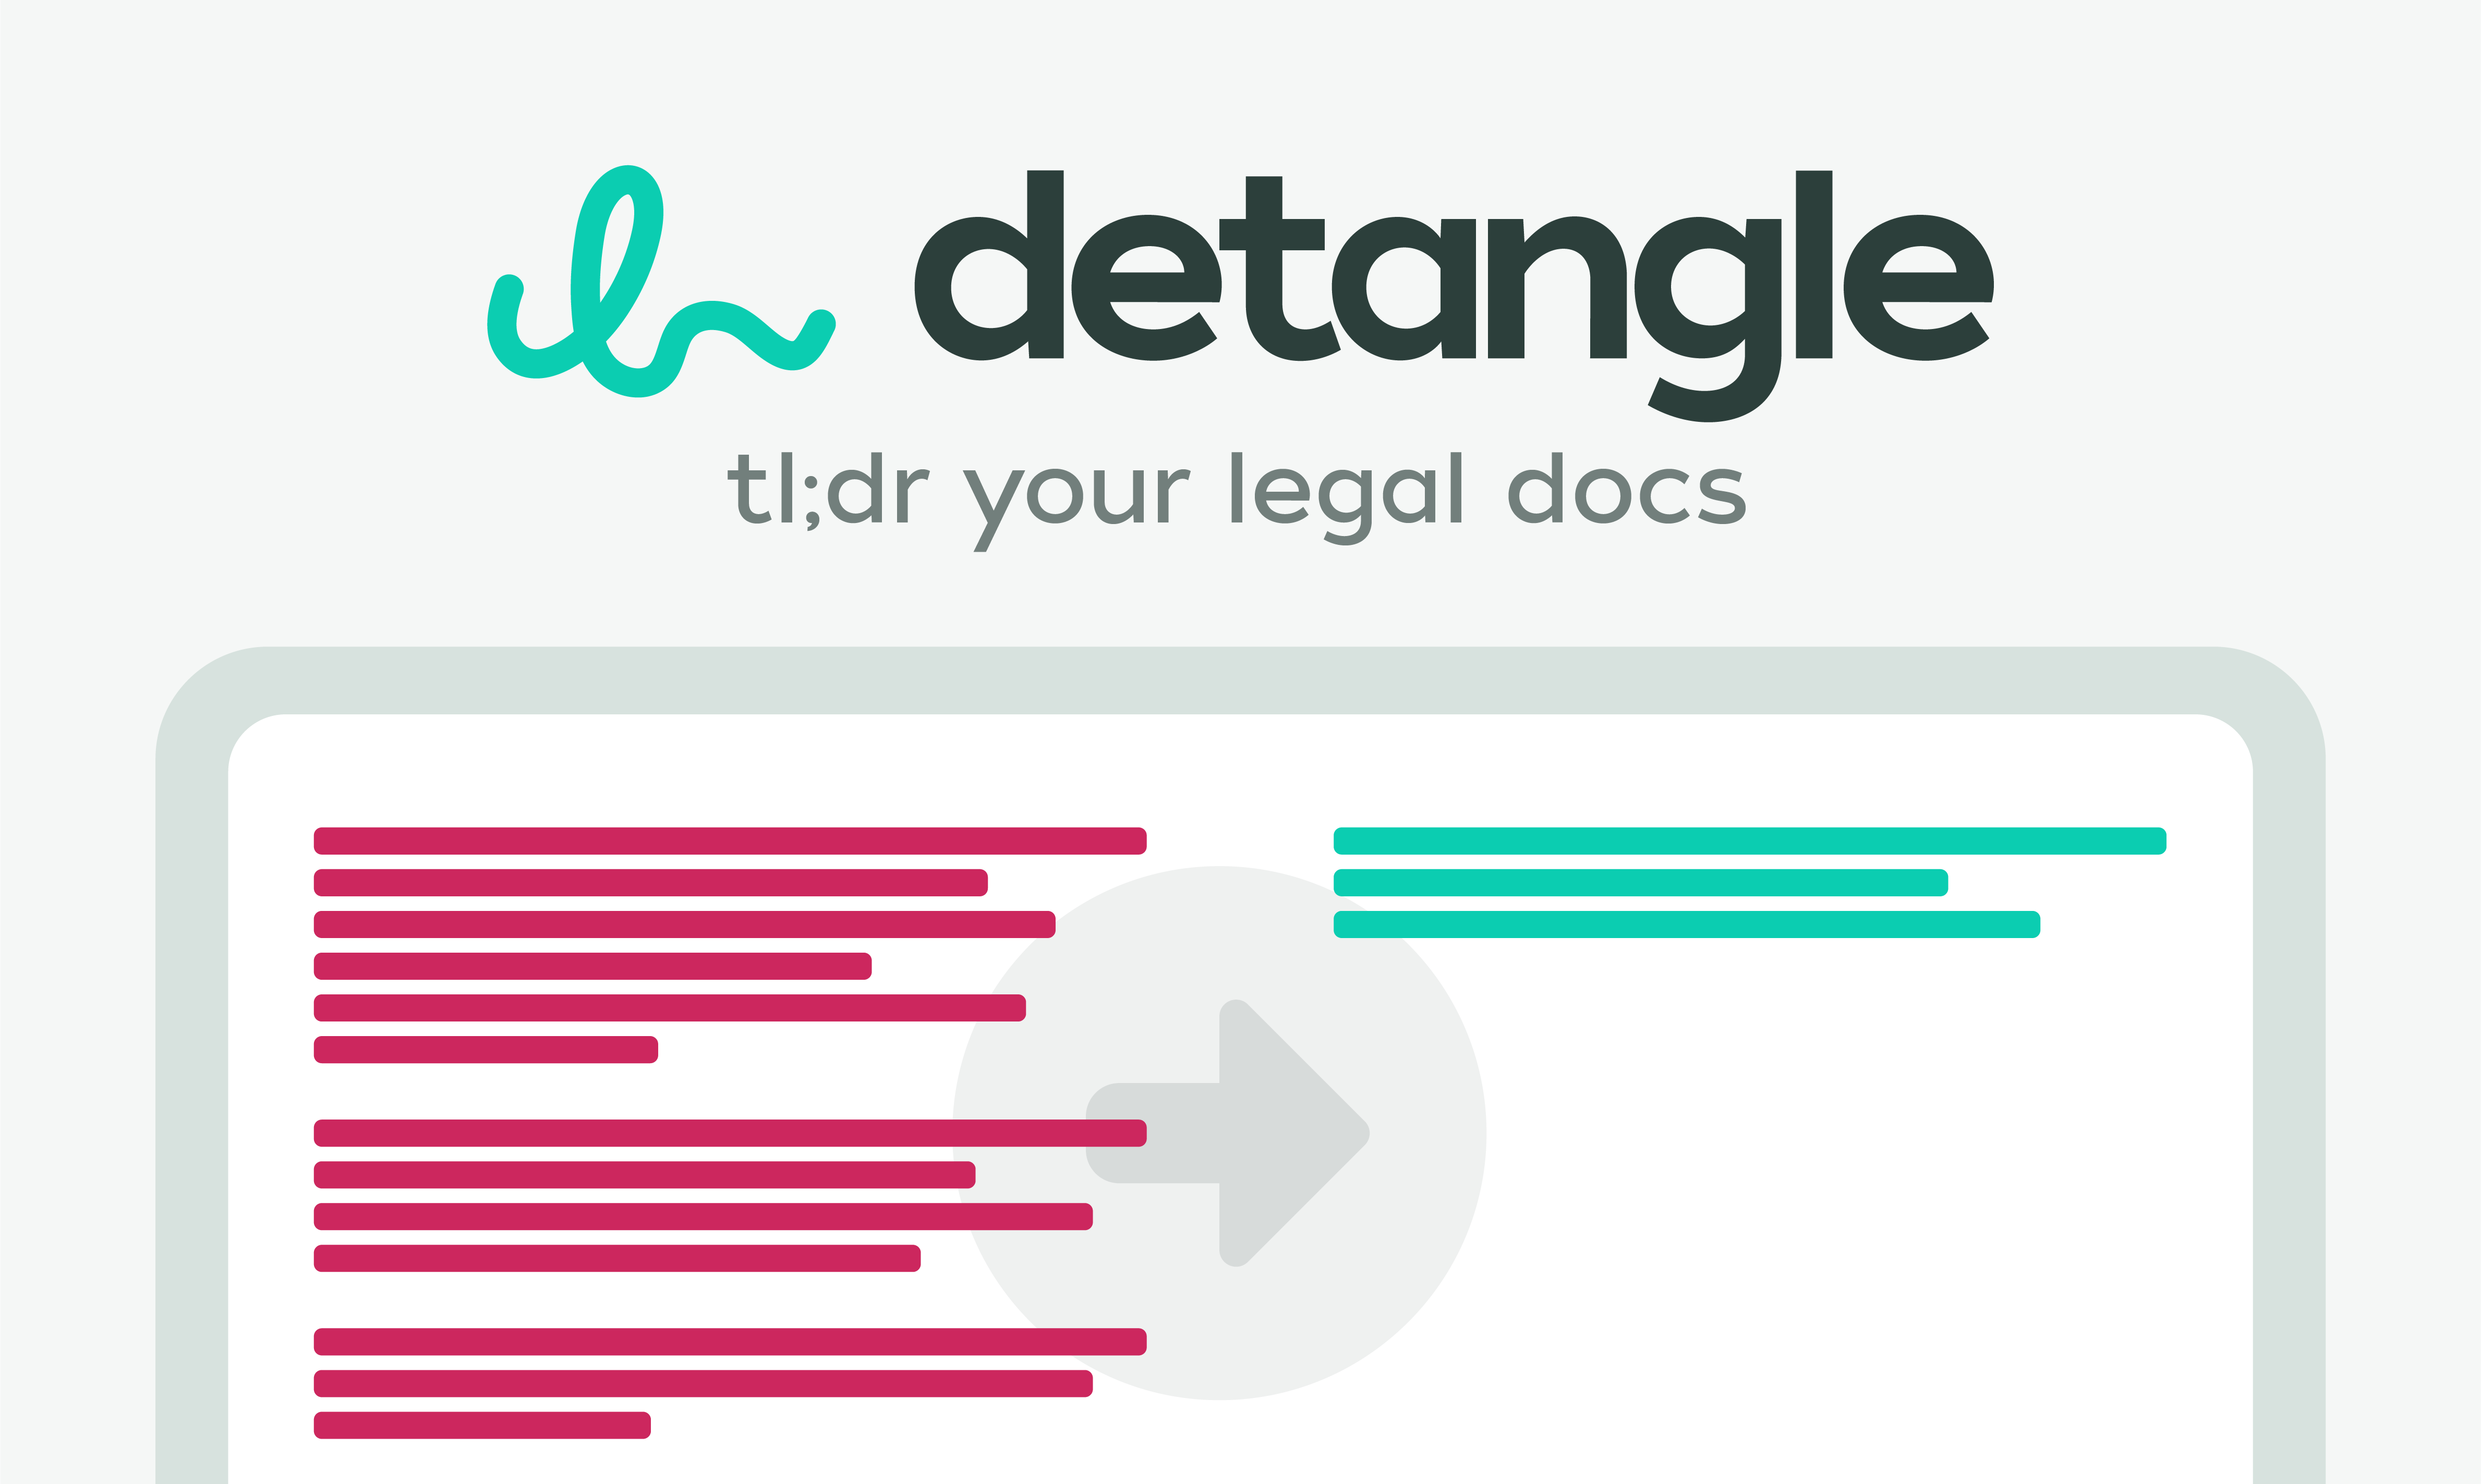 Detangleai - Ай -сгенерированные резюме ваших юридических документов